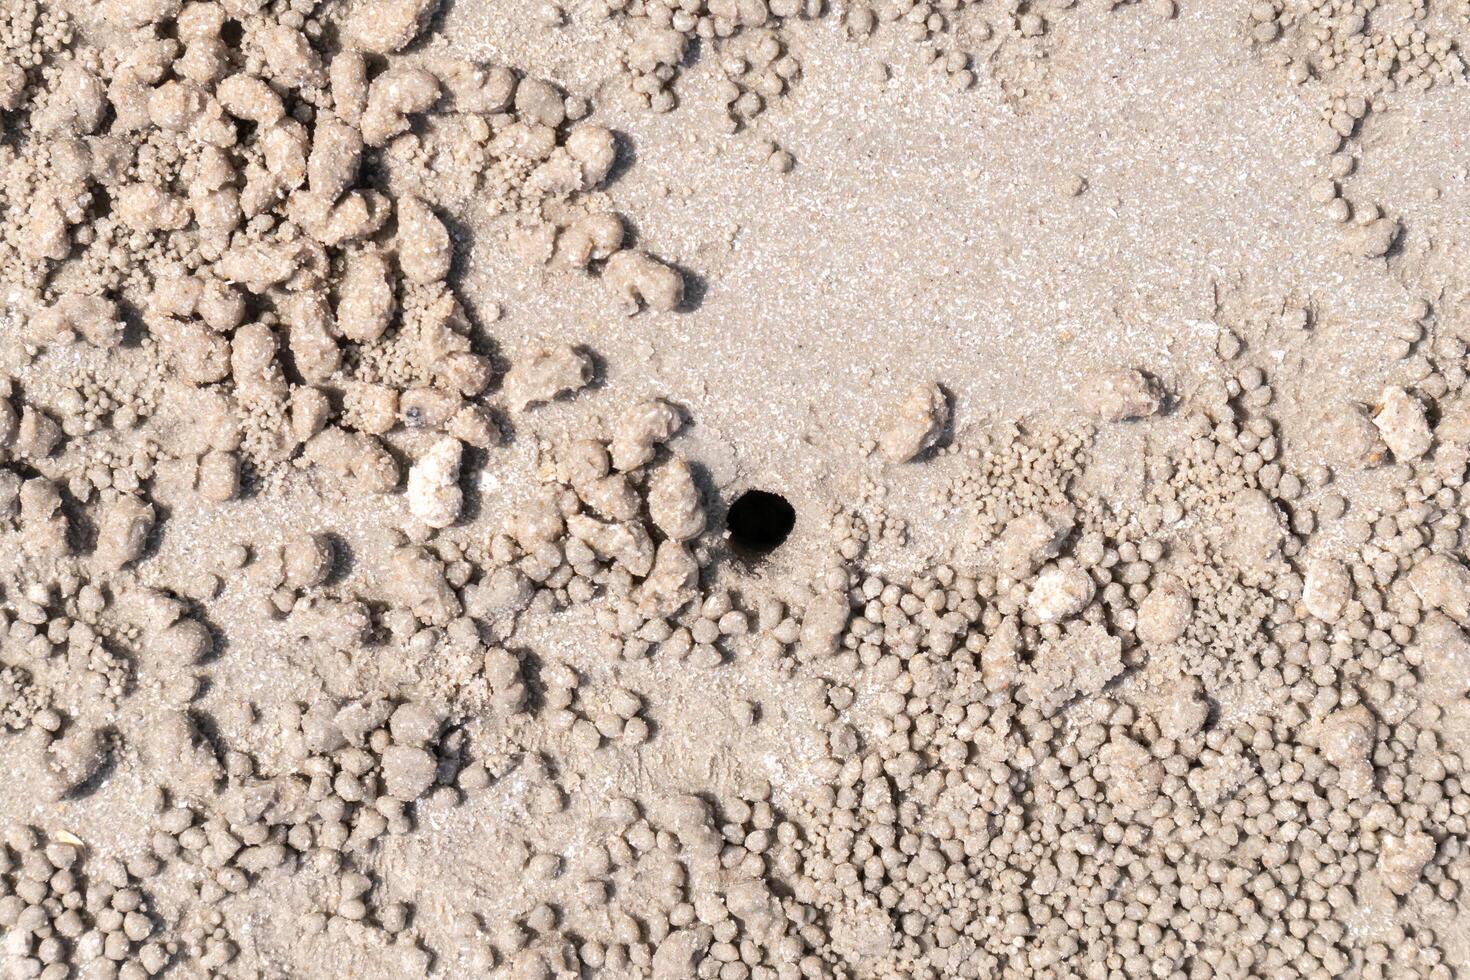 buraco do caranguejo no chão da praia na areia molhada foto